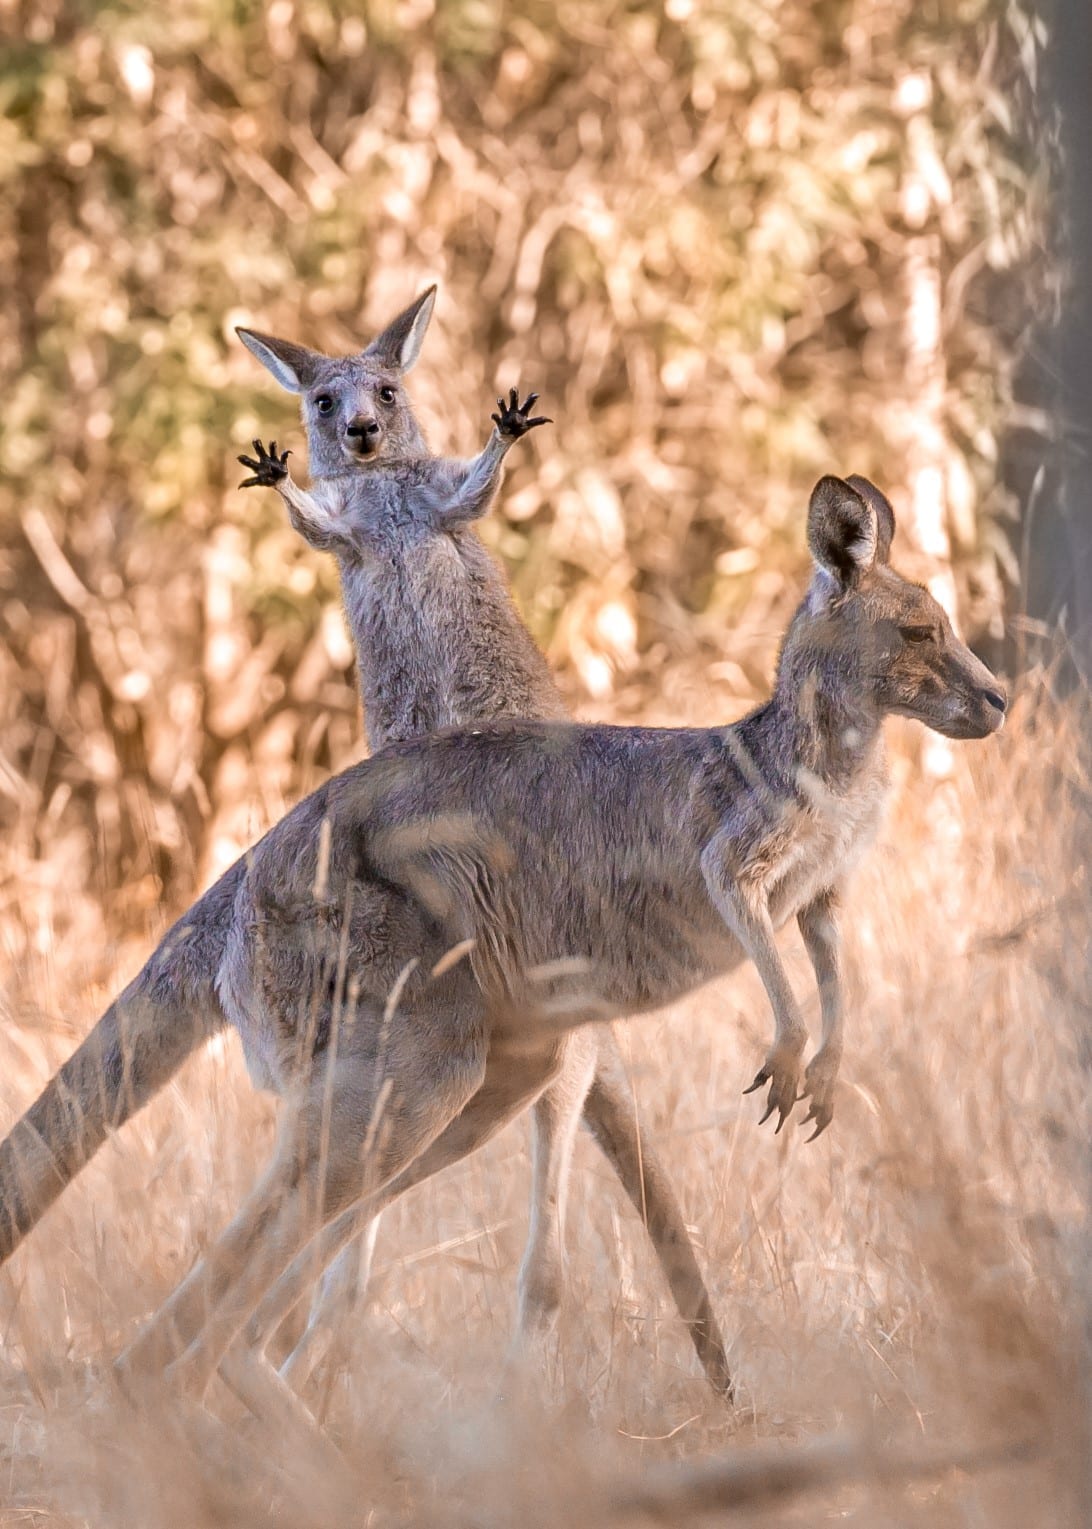 Two kangaroos in Westerfolds Park